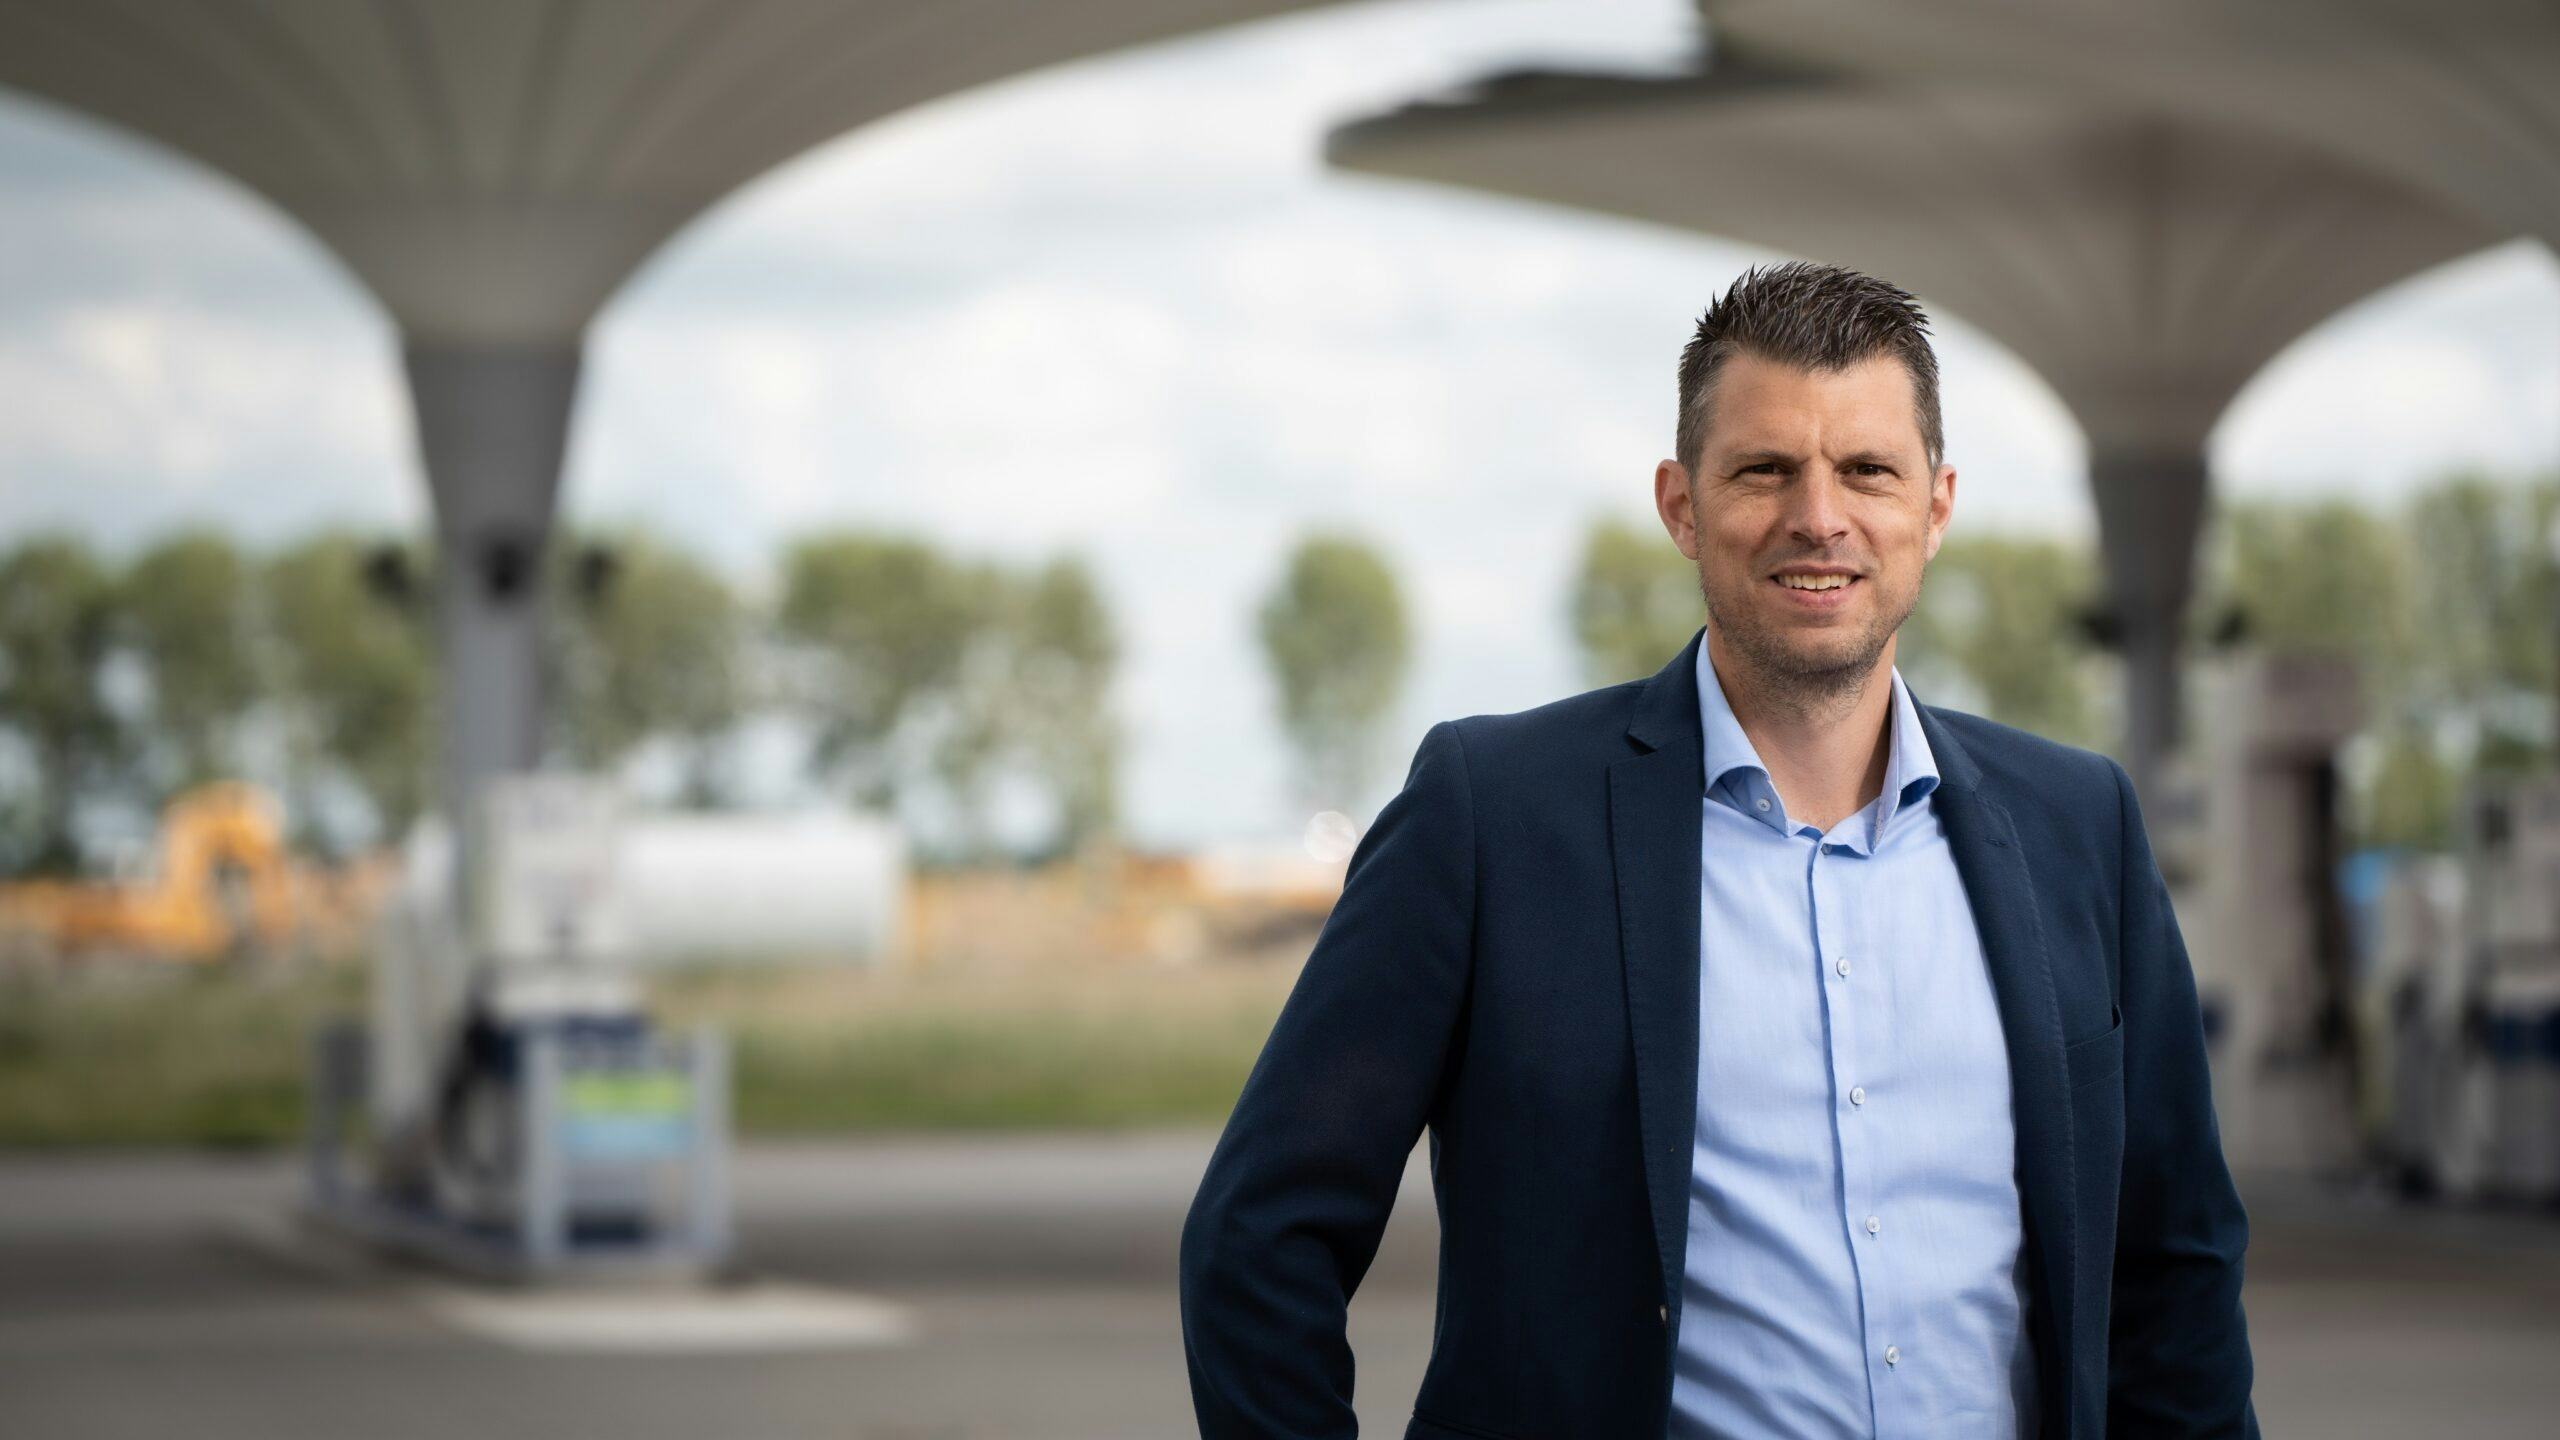 Bij het tankstation in Alkmaar kunnen chauffeurs van trucks en bestelbussen voortaan ook waterstof tanken. De uitbreiding met waterstof is niet alleen een mijlpaal voor NXT Mobility maar voor de hele regio, benadrukt directeur Erik Metselaar.